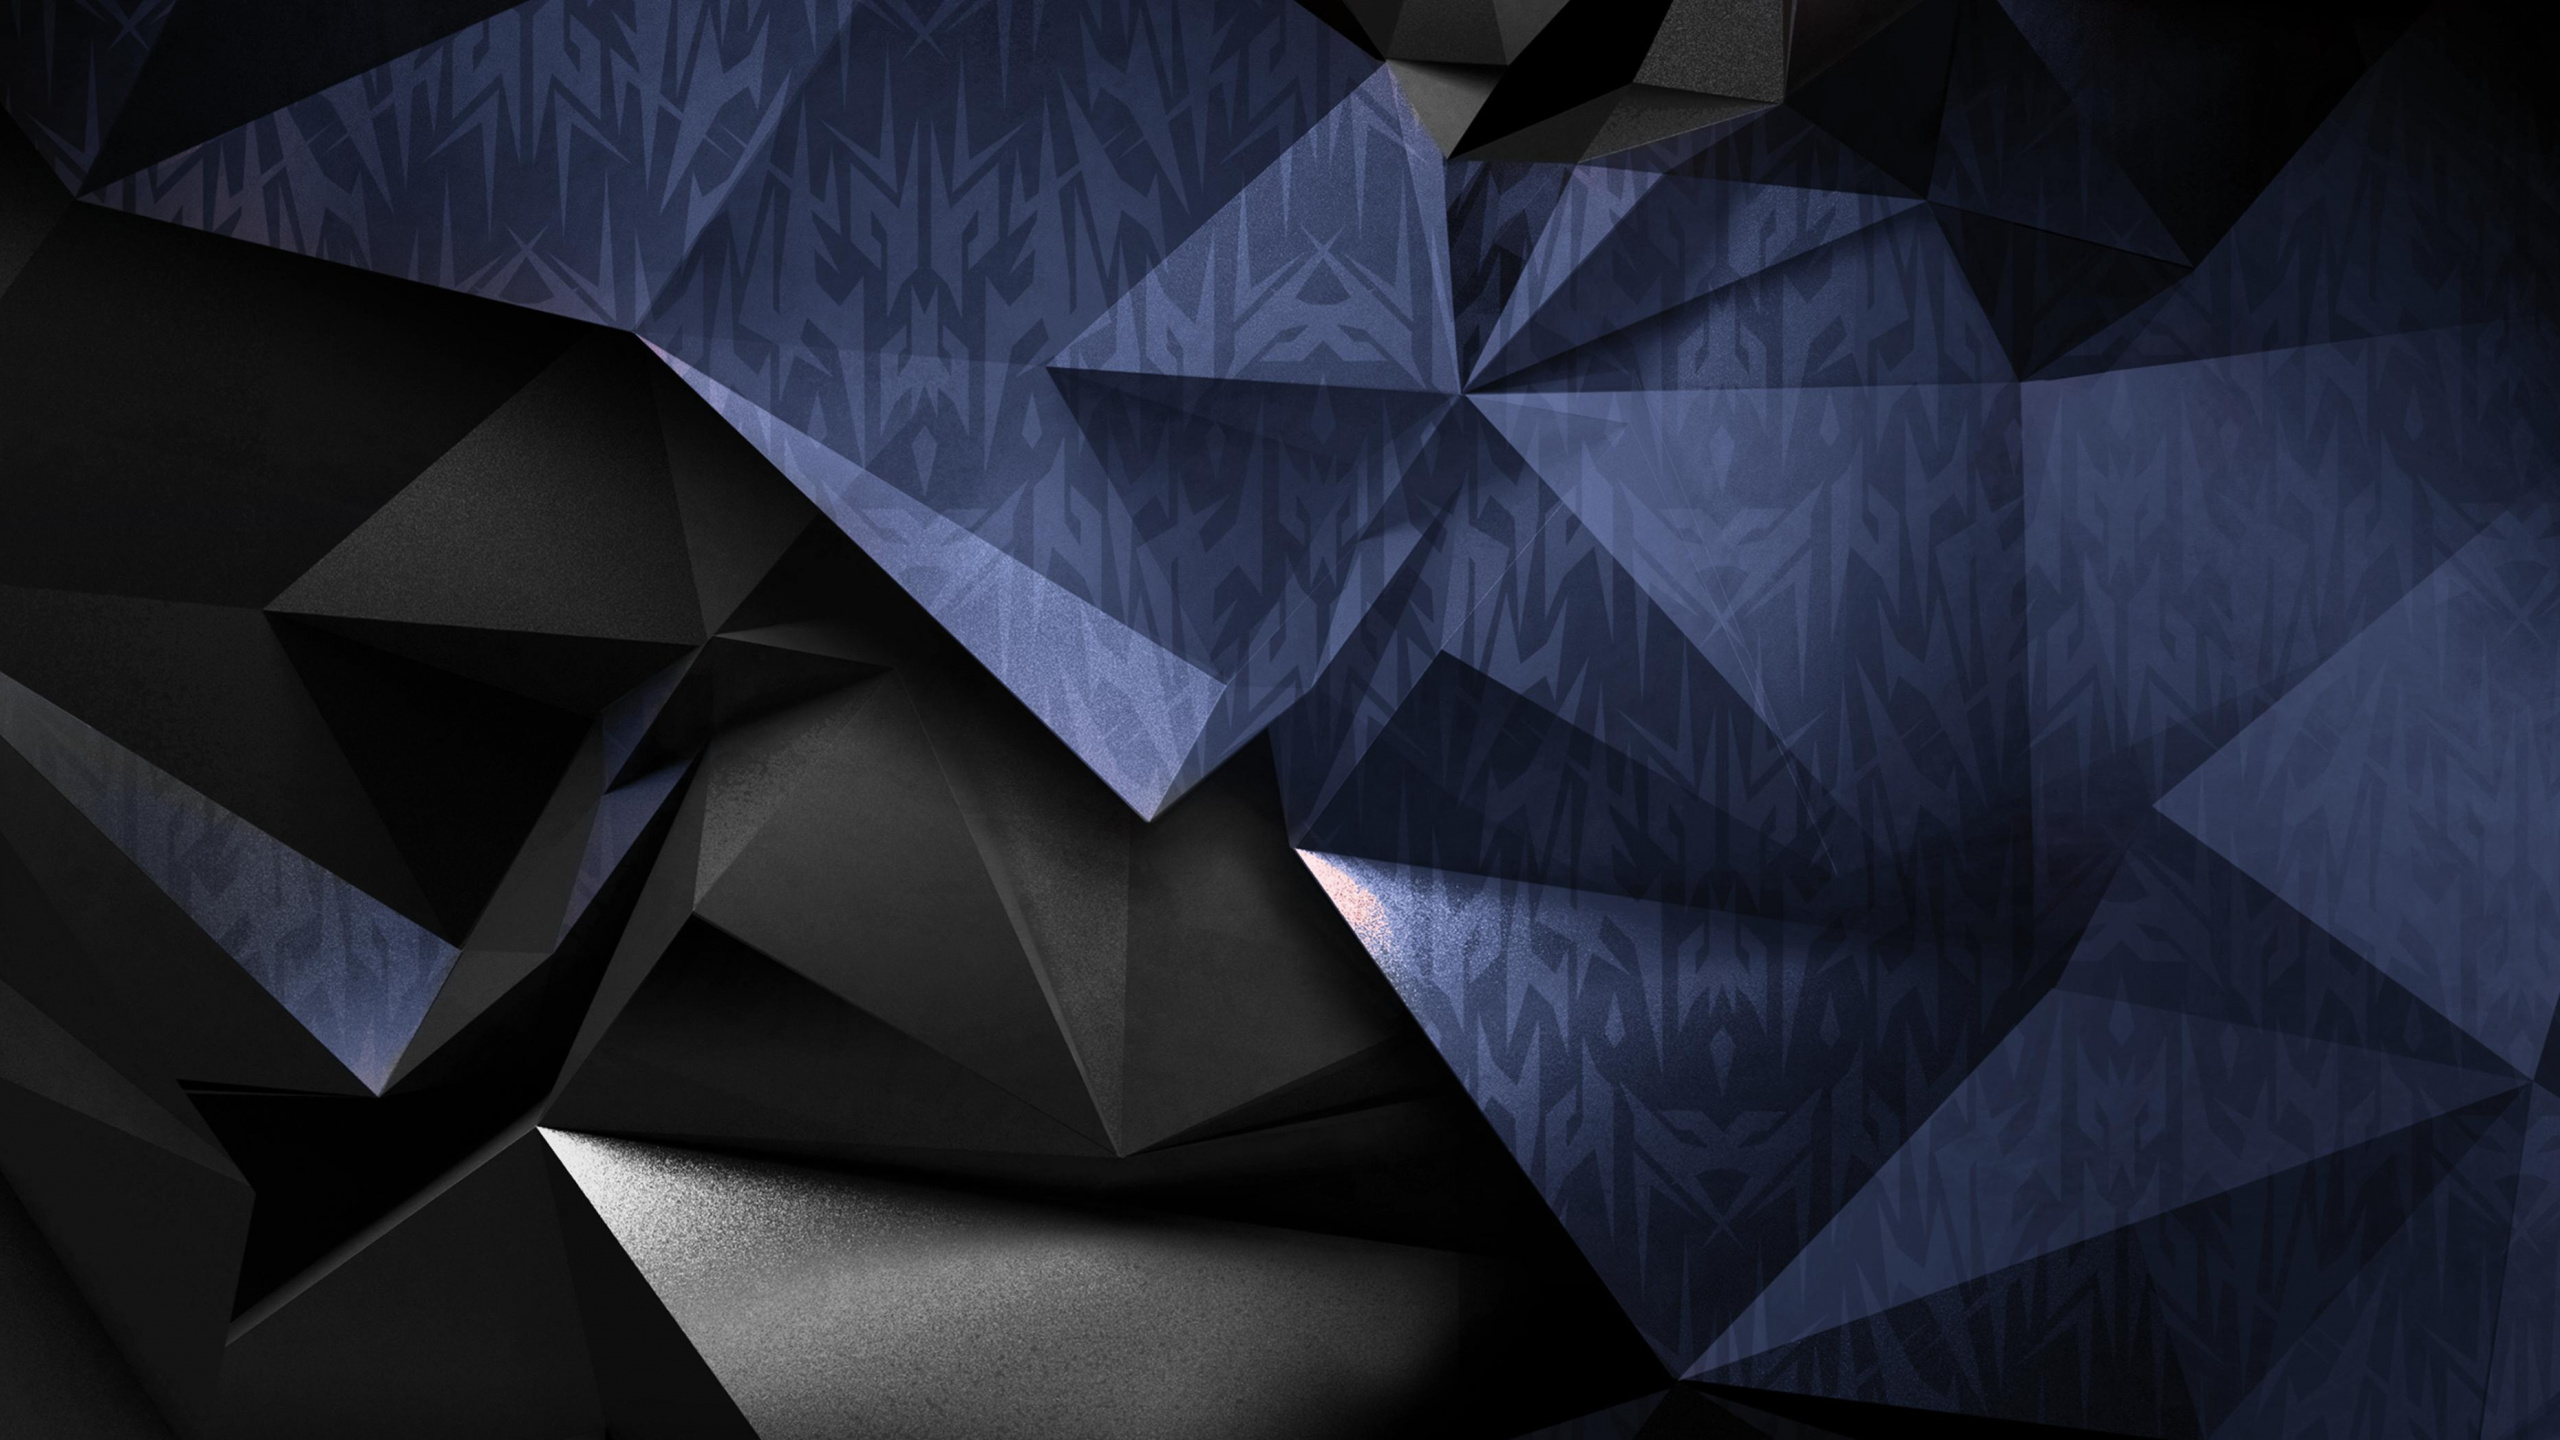 Art Abstrait Bleu et Noir. Wallpaper in 2560x1440 Resolution